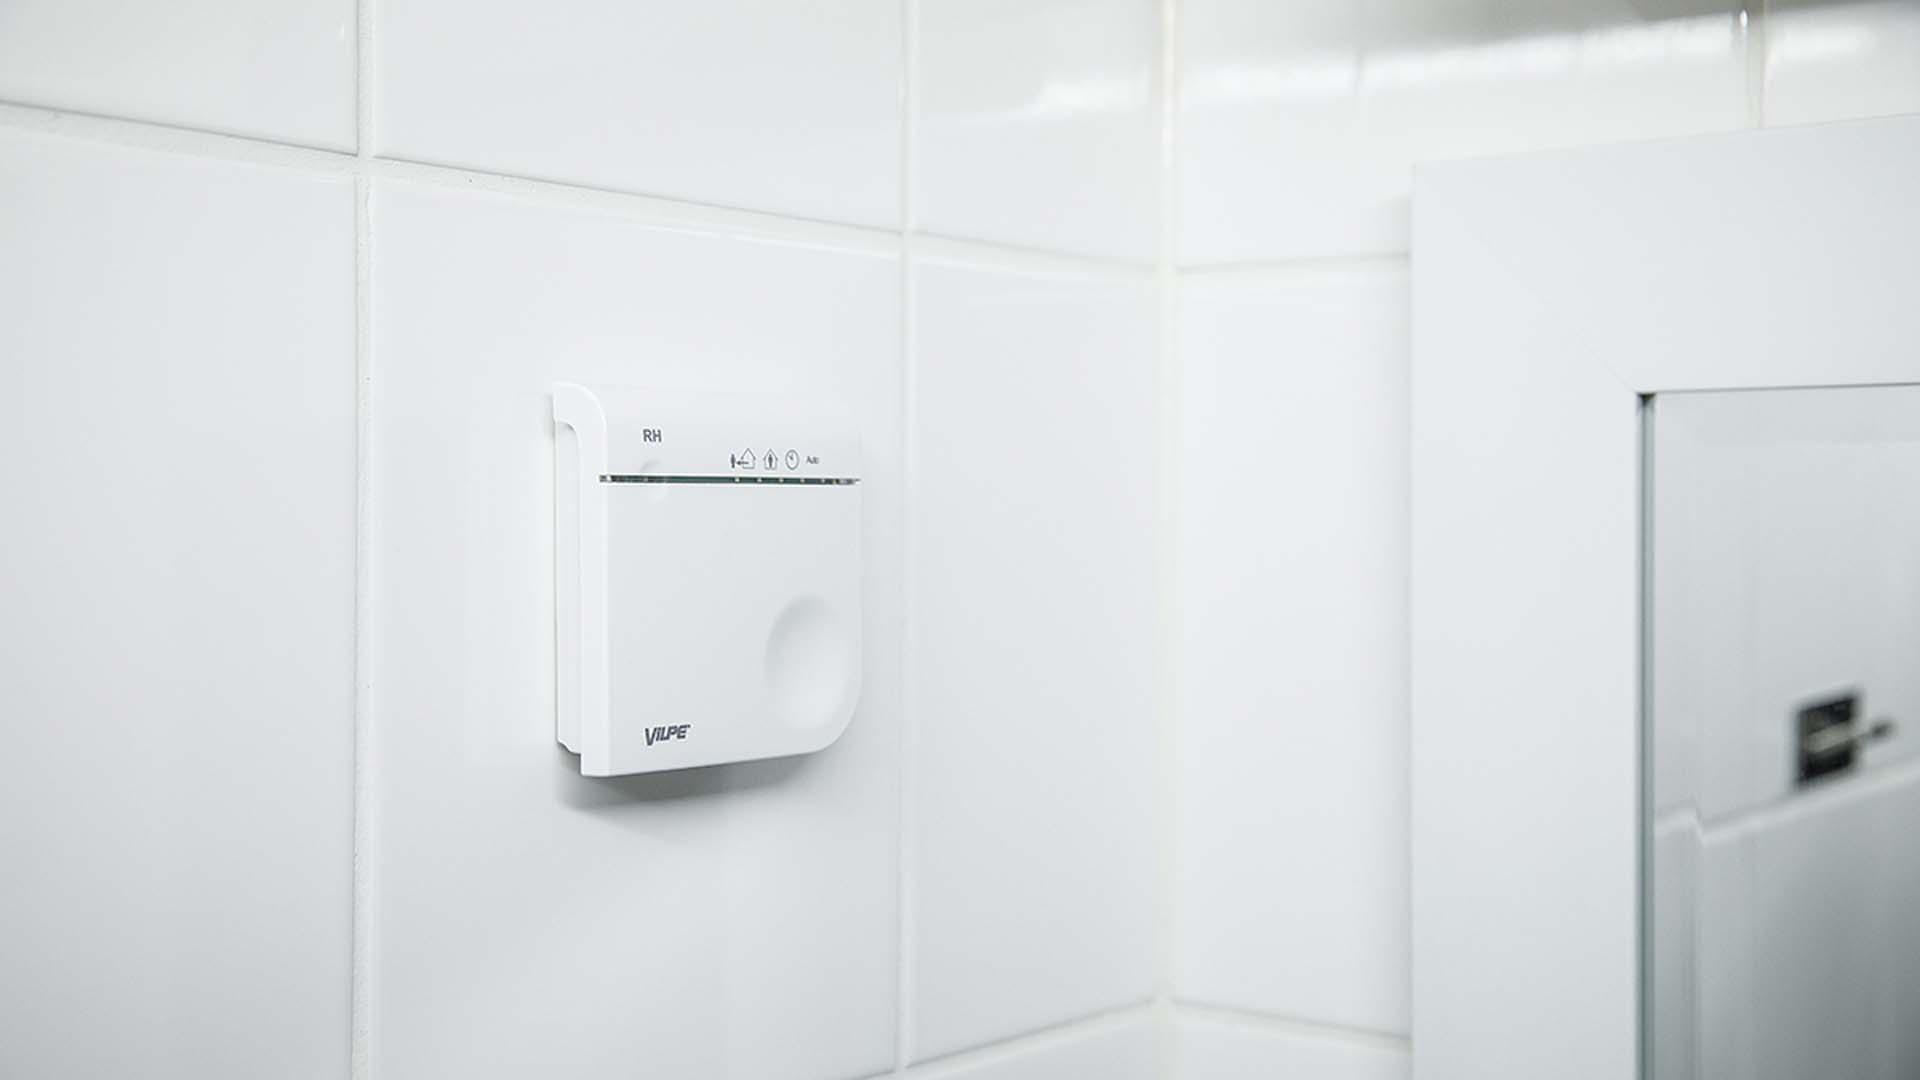 Järjestelmä tunnistaa automaattisesti, kun esimerkiksi kylpyhuoneessa on enemmän kosteutta.